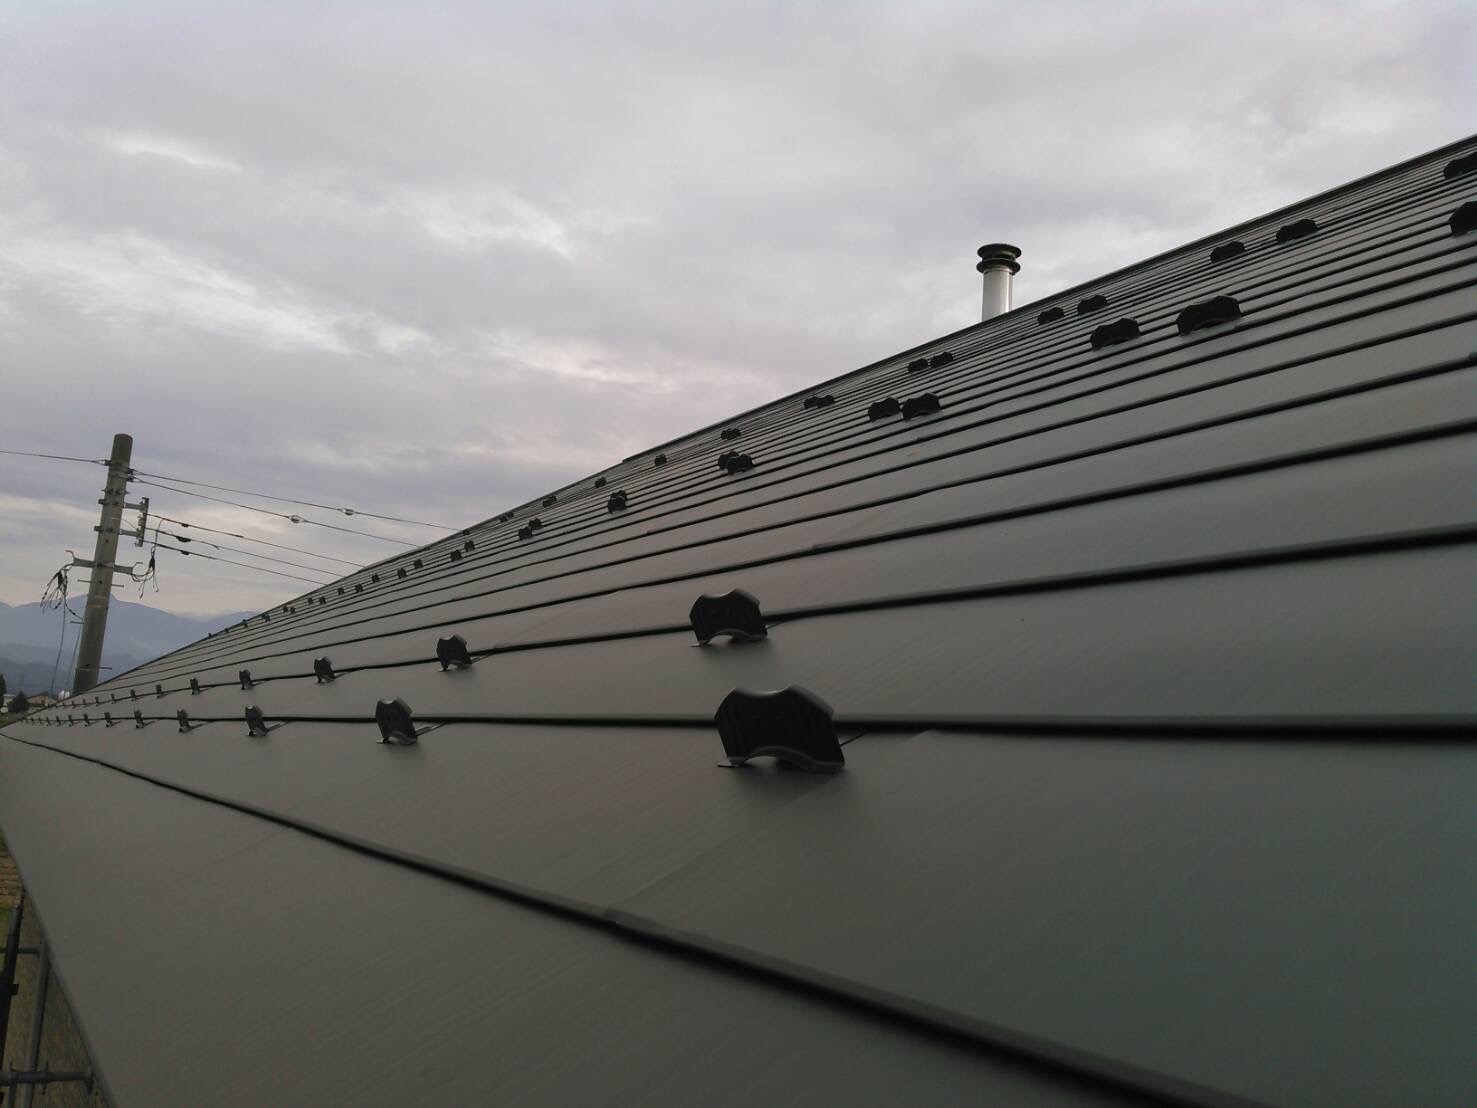 ニチハの金属製屋根材「超高耐久 横暖ルーフ」にて屋根カバー工事を行いました。